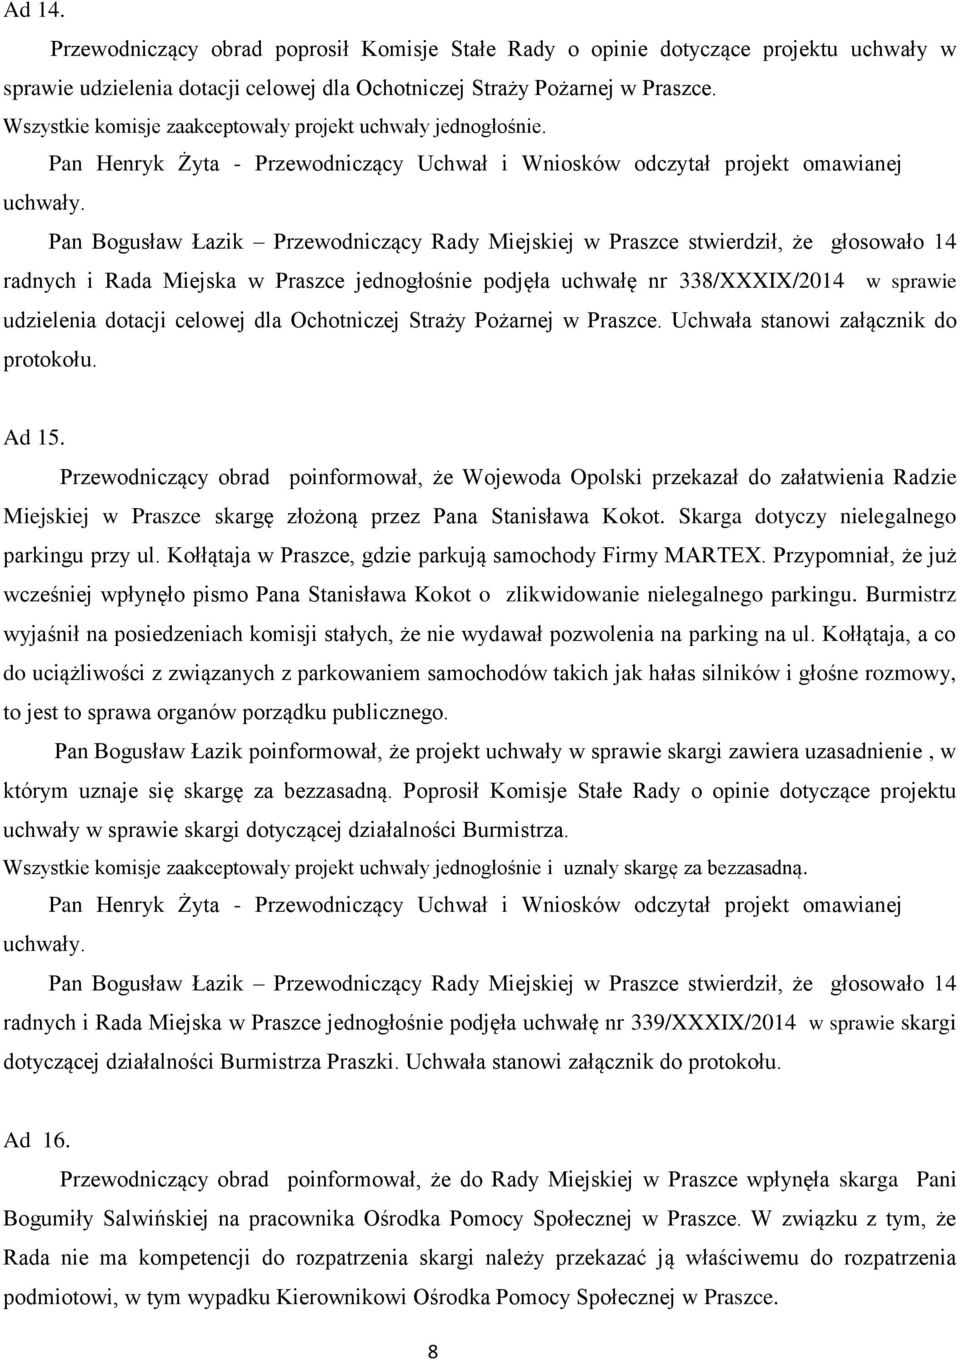 Ad 15. Przewodniczący obrad poinformował, że Wojewoda Opolski przekazał do załatwienia Radzie Miejskiej w Praszce skargę złożoną przez Pana Stanisława Kokot.